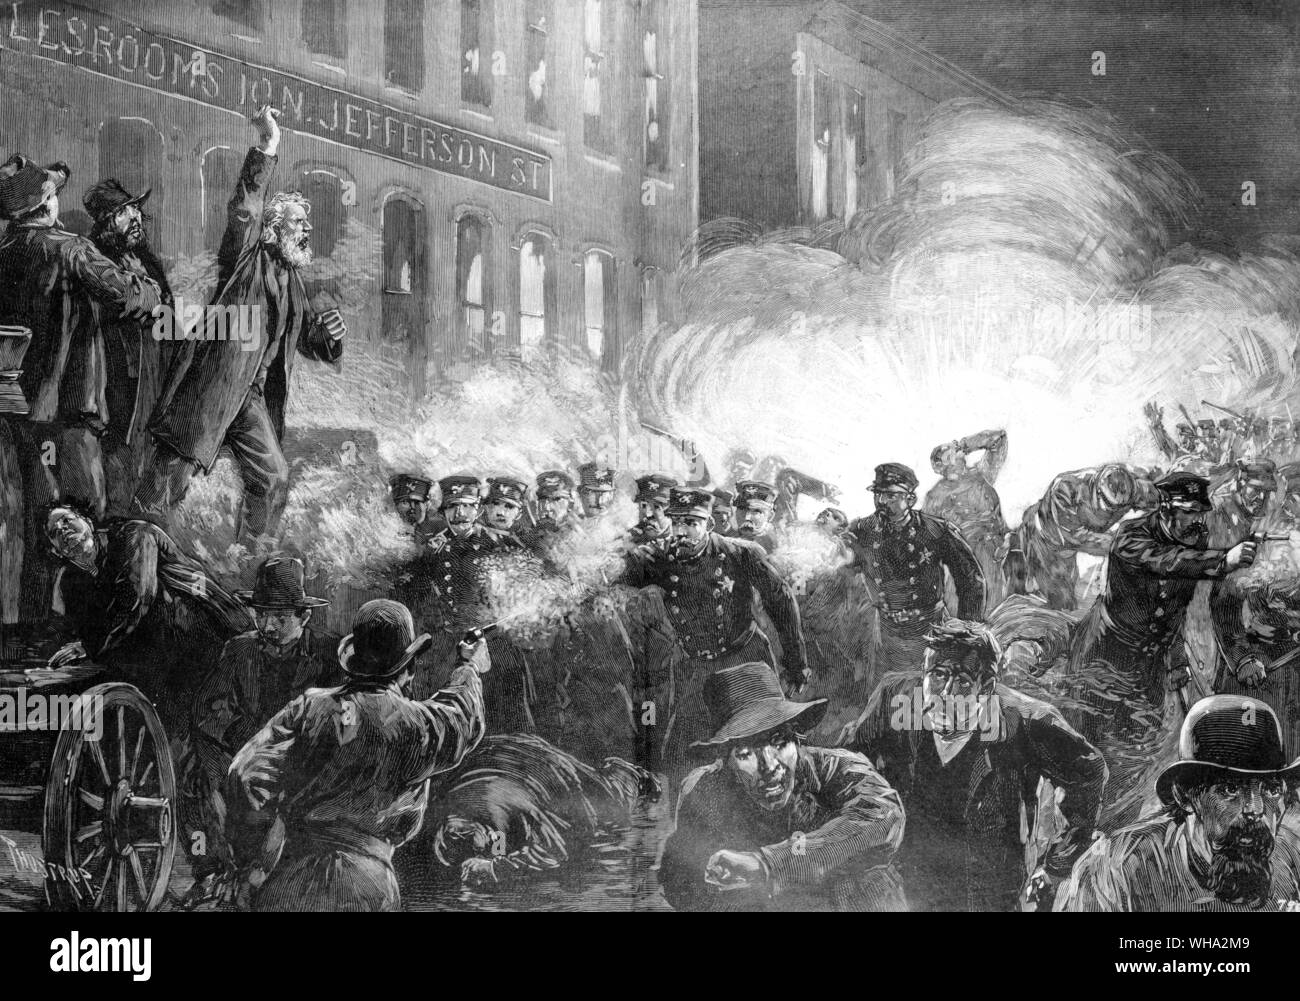 Der Anarchist Riot in Haymarket Square, Chicago 1886 - ein Dynamit Bombe bei der Polizei zu explodieren.. . Gravur von Harpers Weekly vom 15. Mai 1886 Stockfoto